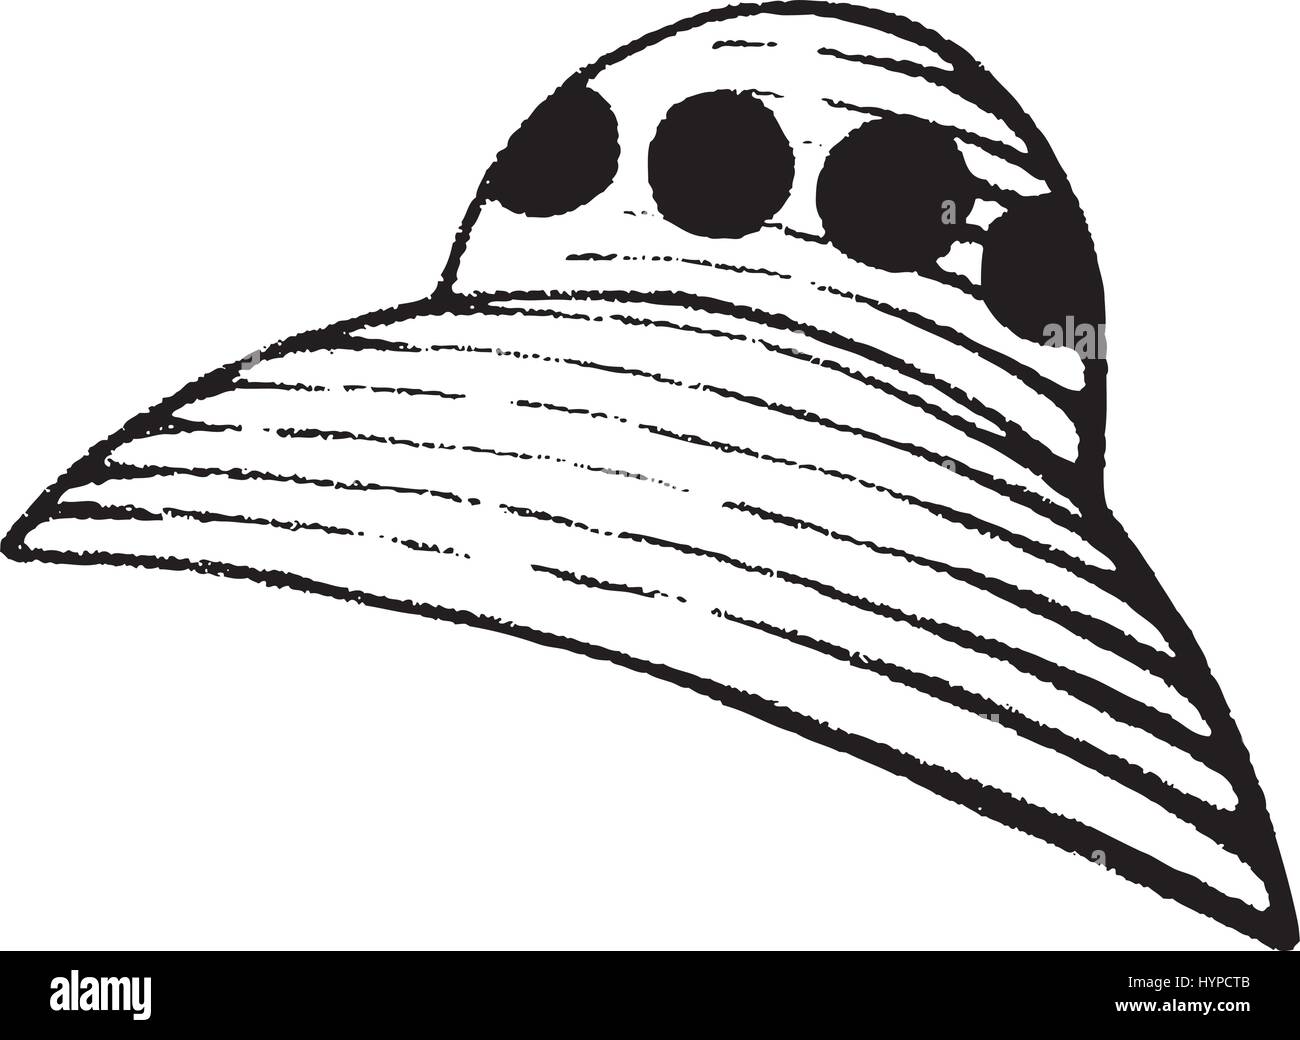 Illustrazione vettoriale di un stile Scratchboard disegno a inchiostro di una astronave aliena Illustrazione Vettoriale